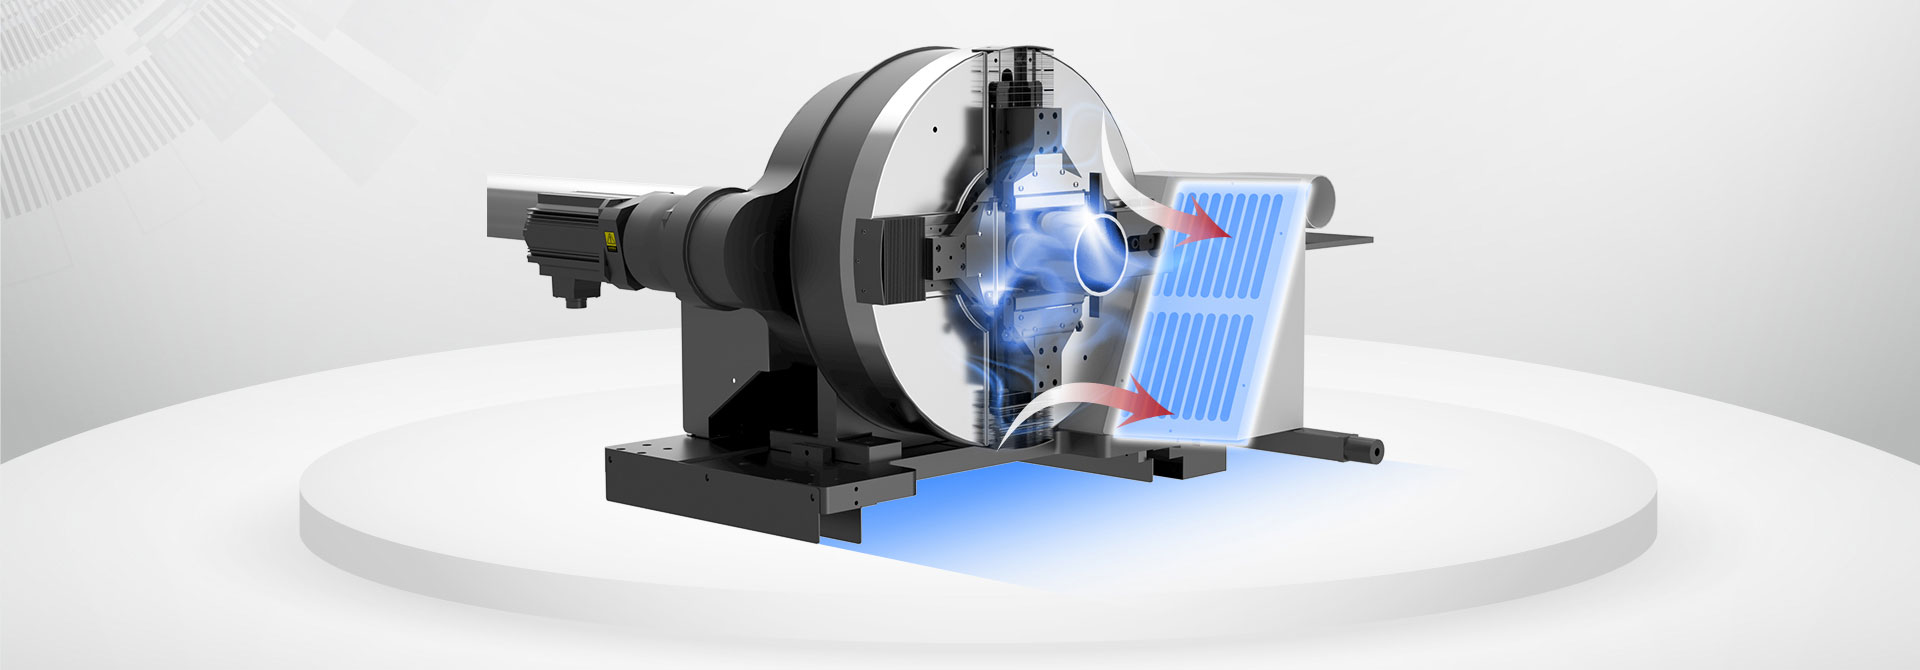 專業激光切管機-專利除塵系統